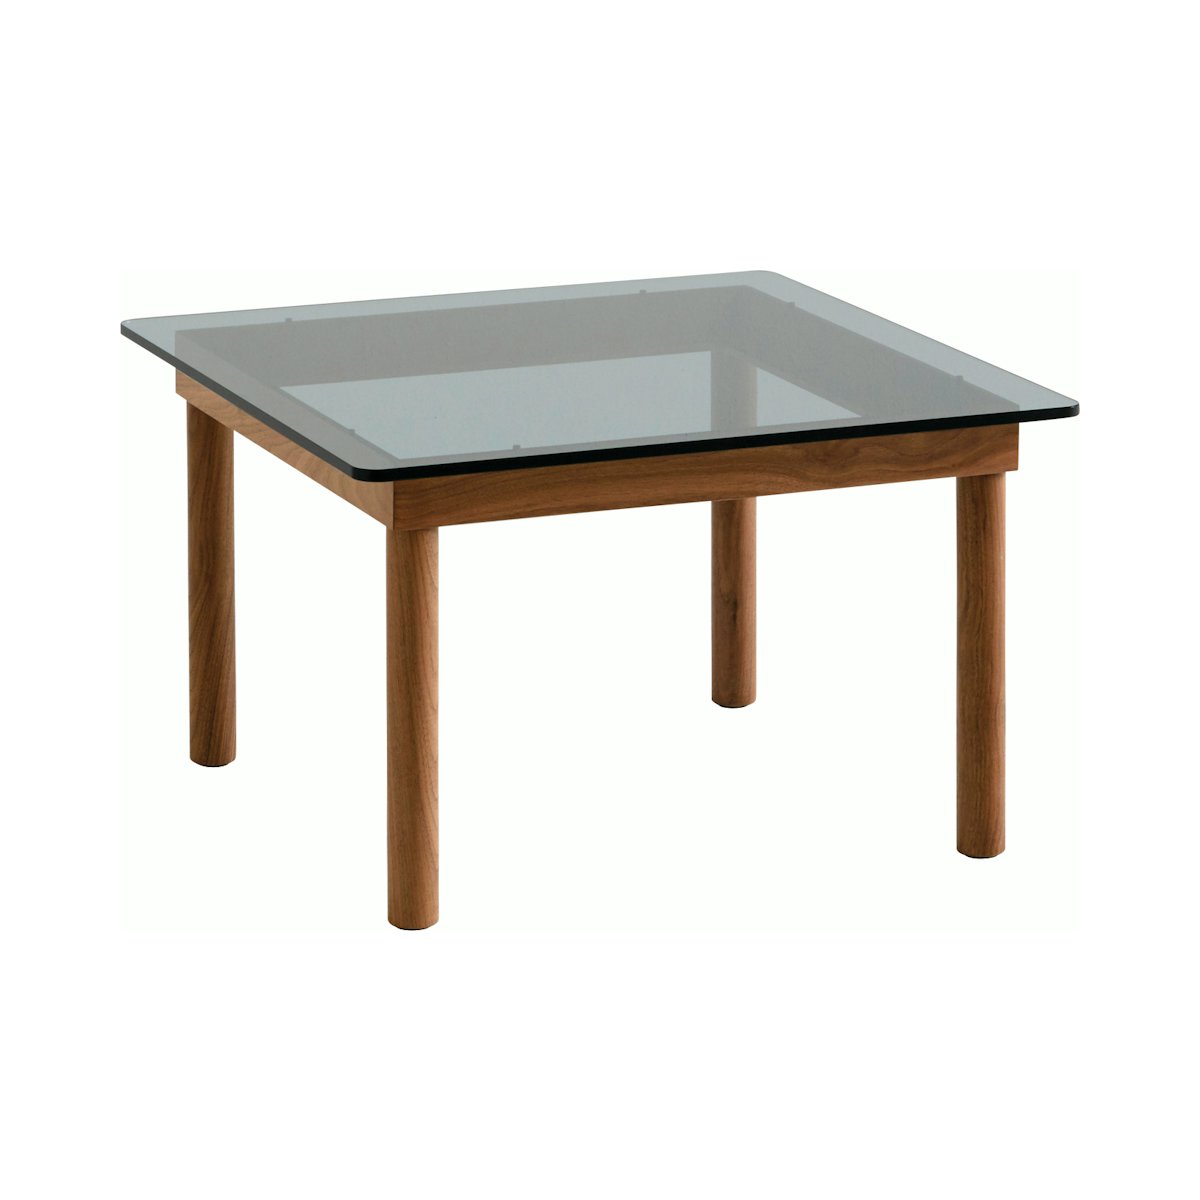 Kofi Table - Square, 23.5"